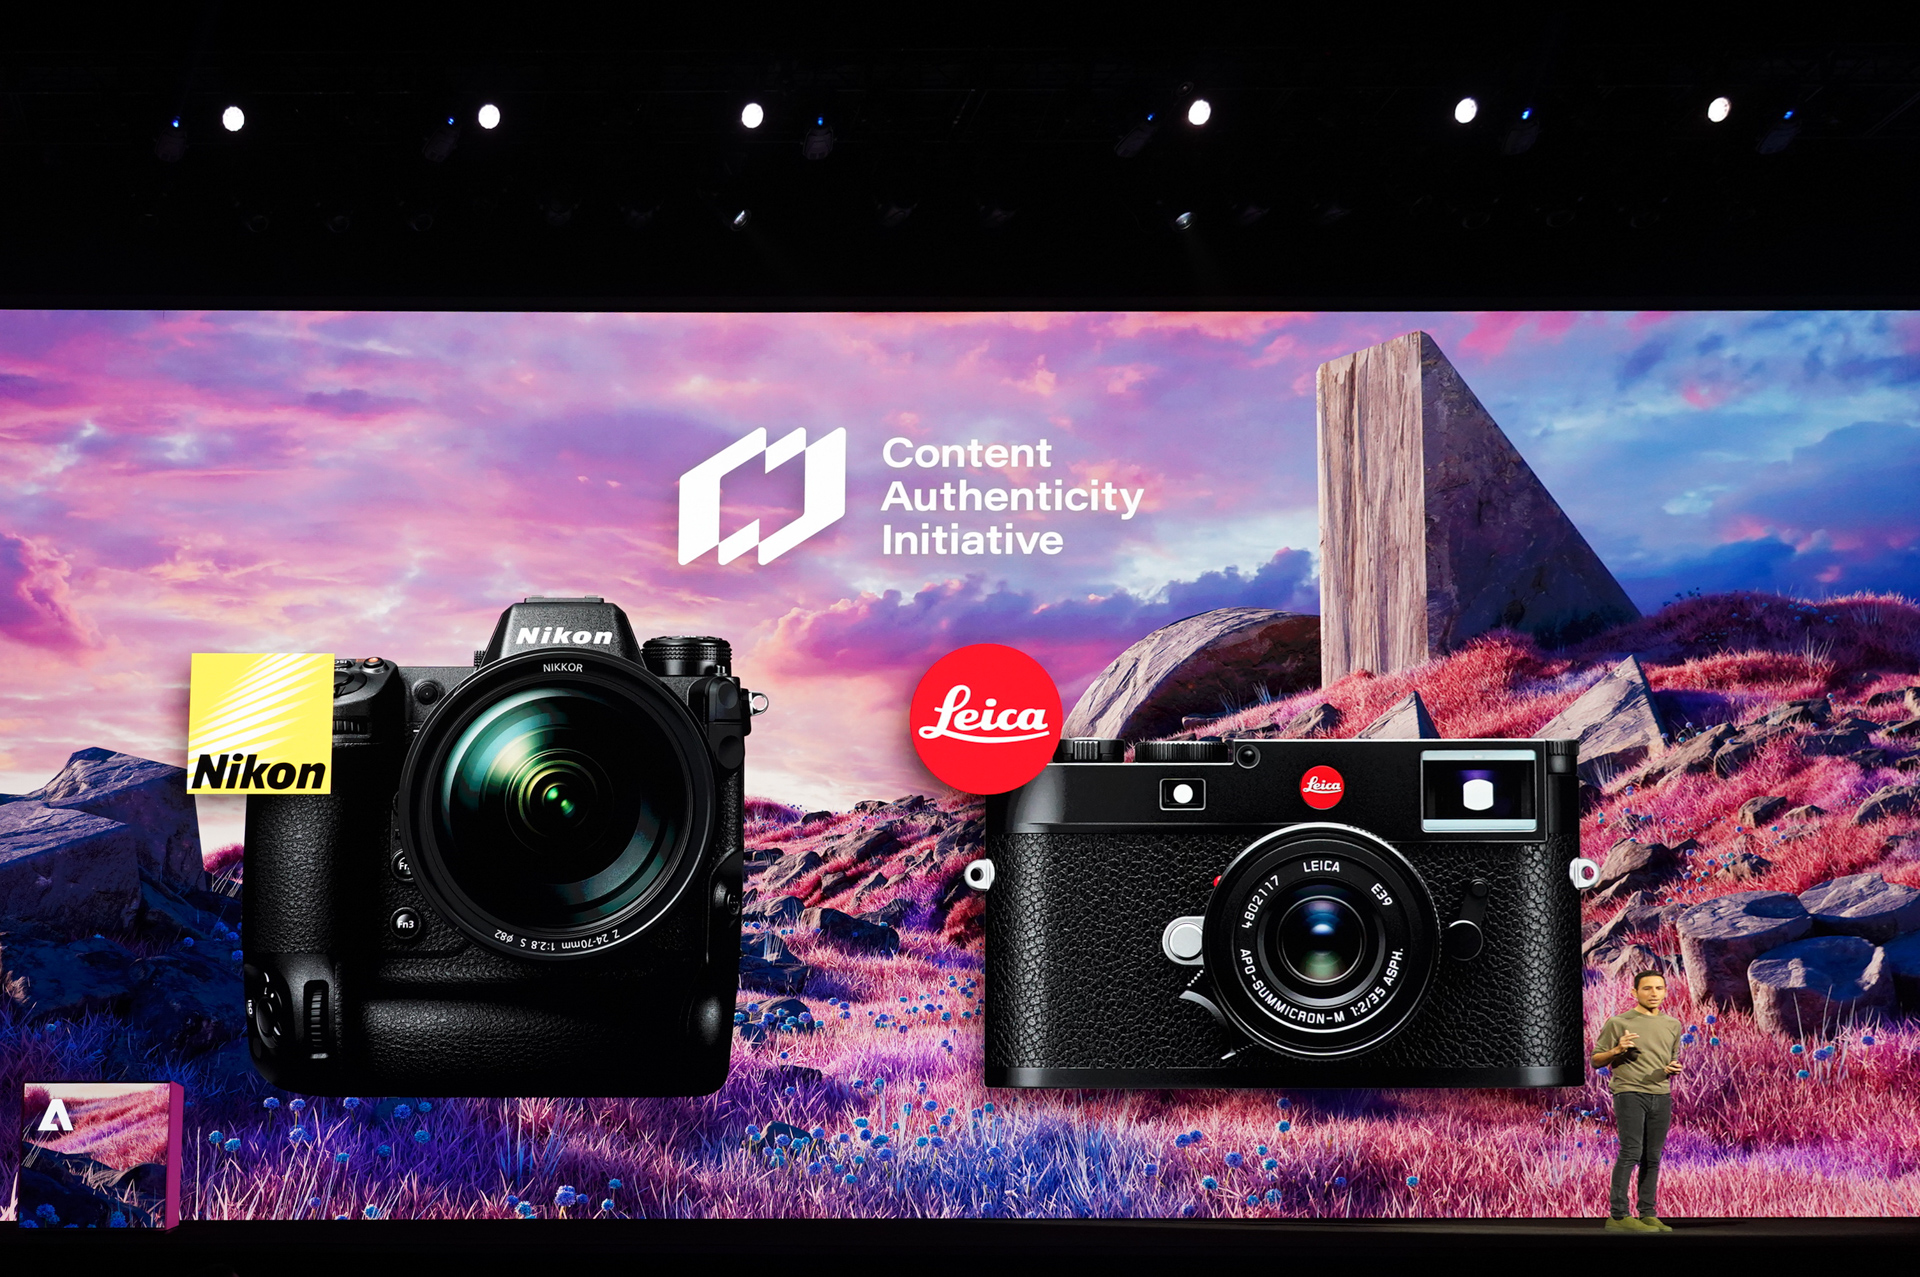 写真改ざん防止技術搭載カメラ、ニコンとライカがリリースへ。Adobe